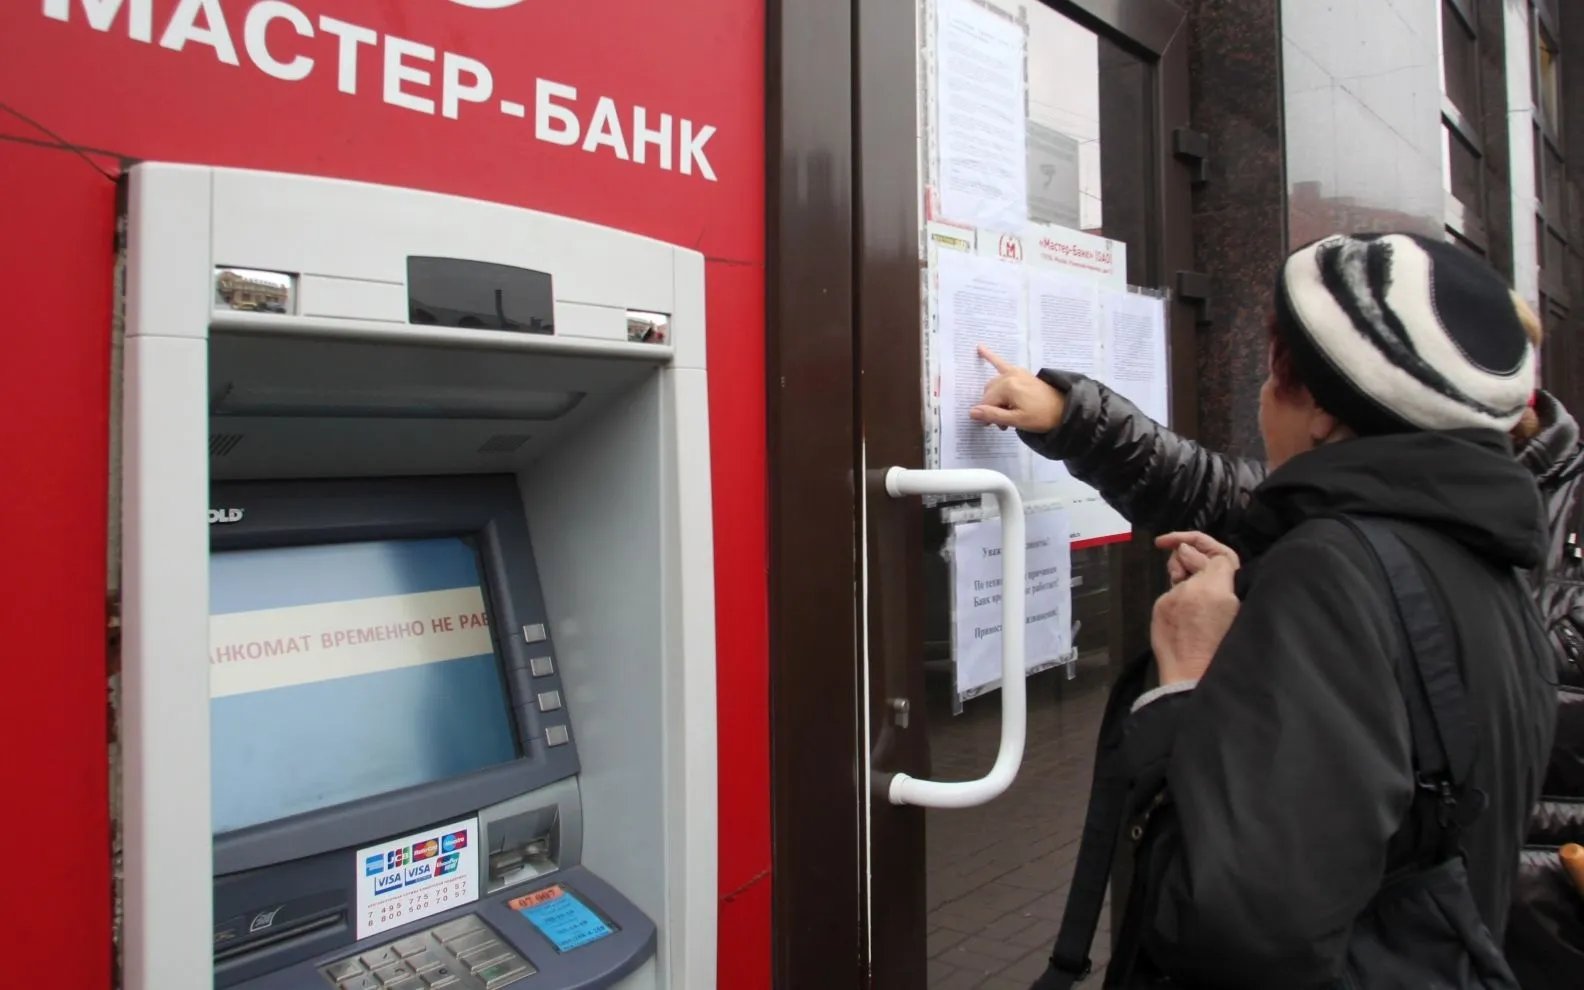 Нужные банкоматы заряжали пятитысячными купюрами, за вечер из них вынимали до 1 млрд рублей